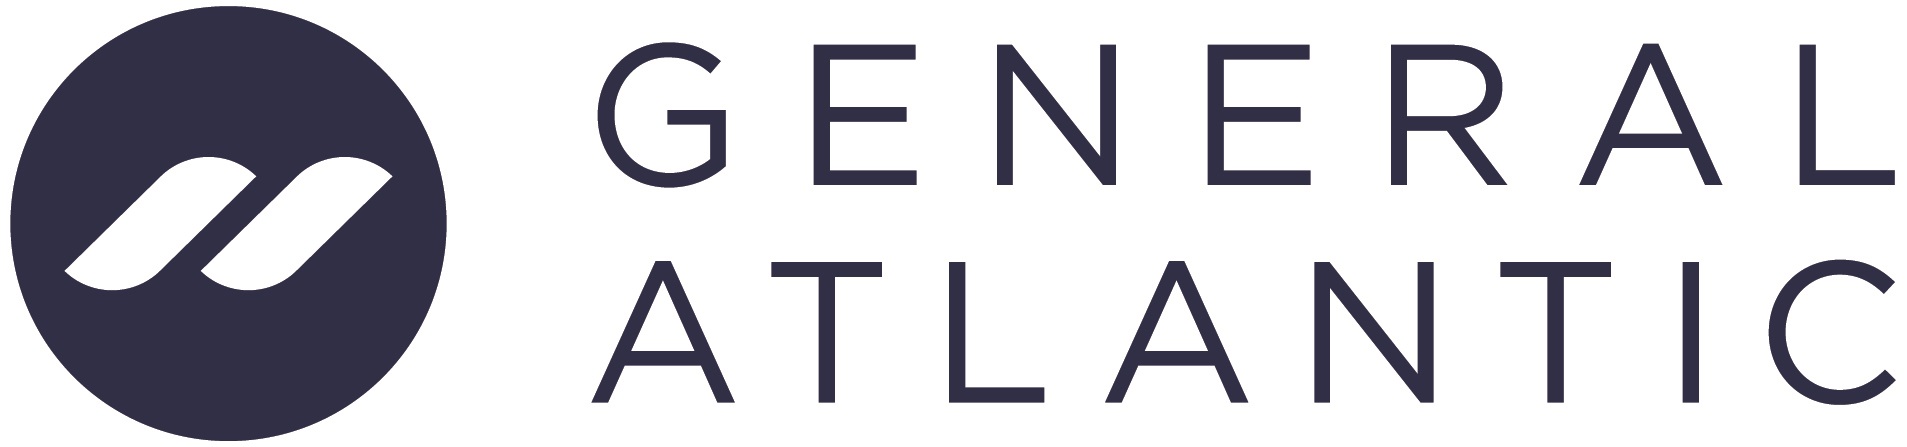 General Atlantic — 130 Deals, 342 Portfolio startups, Statistics ...